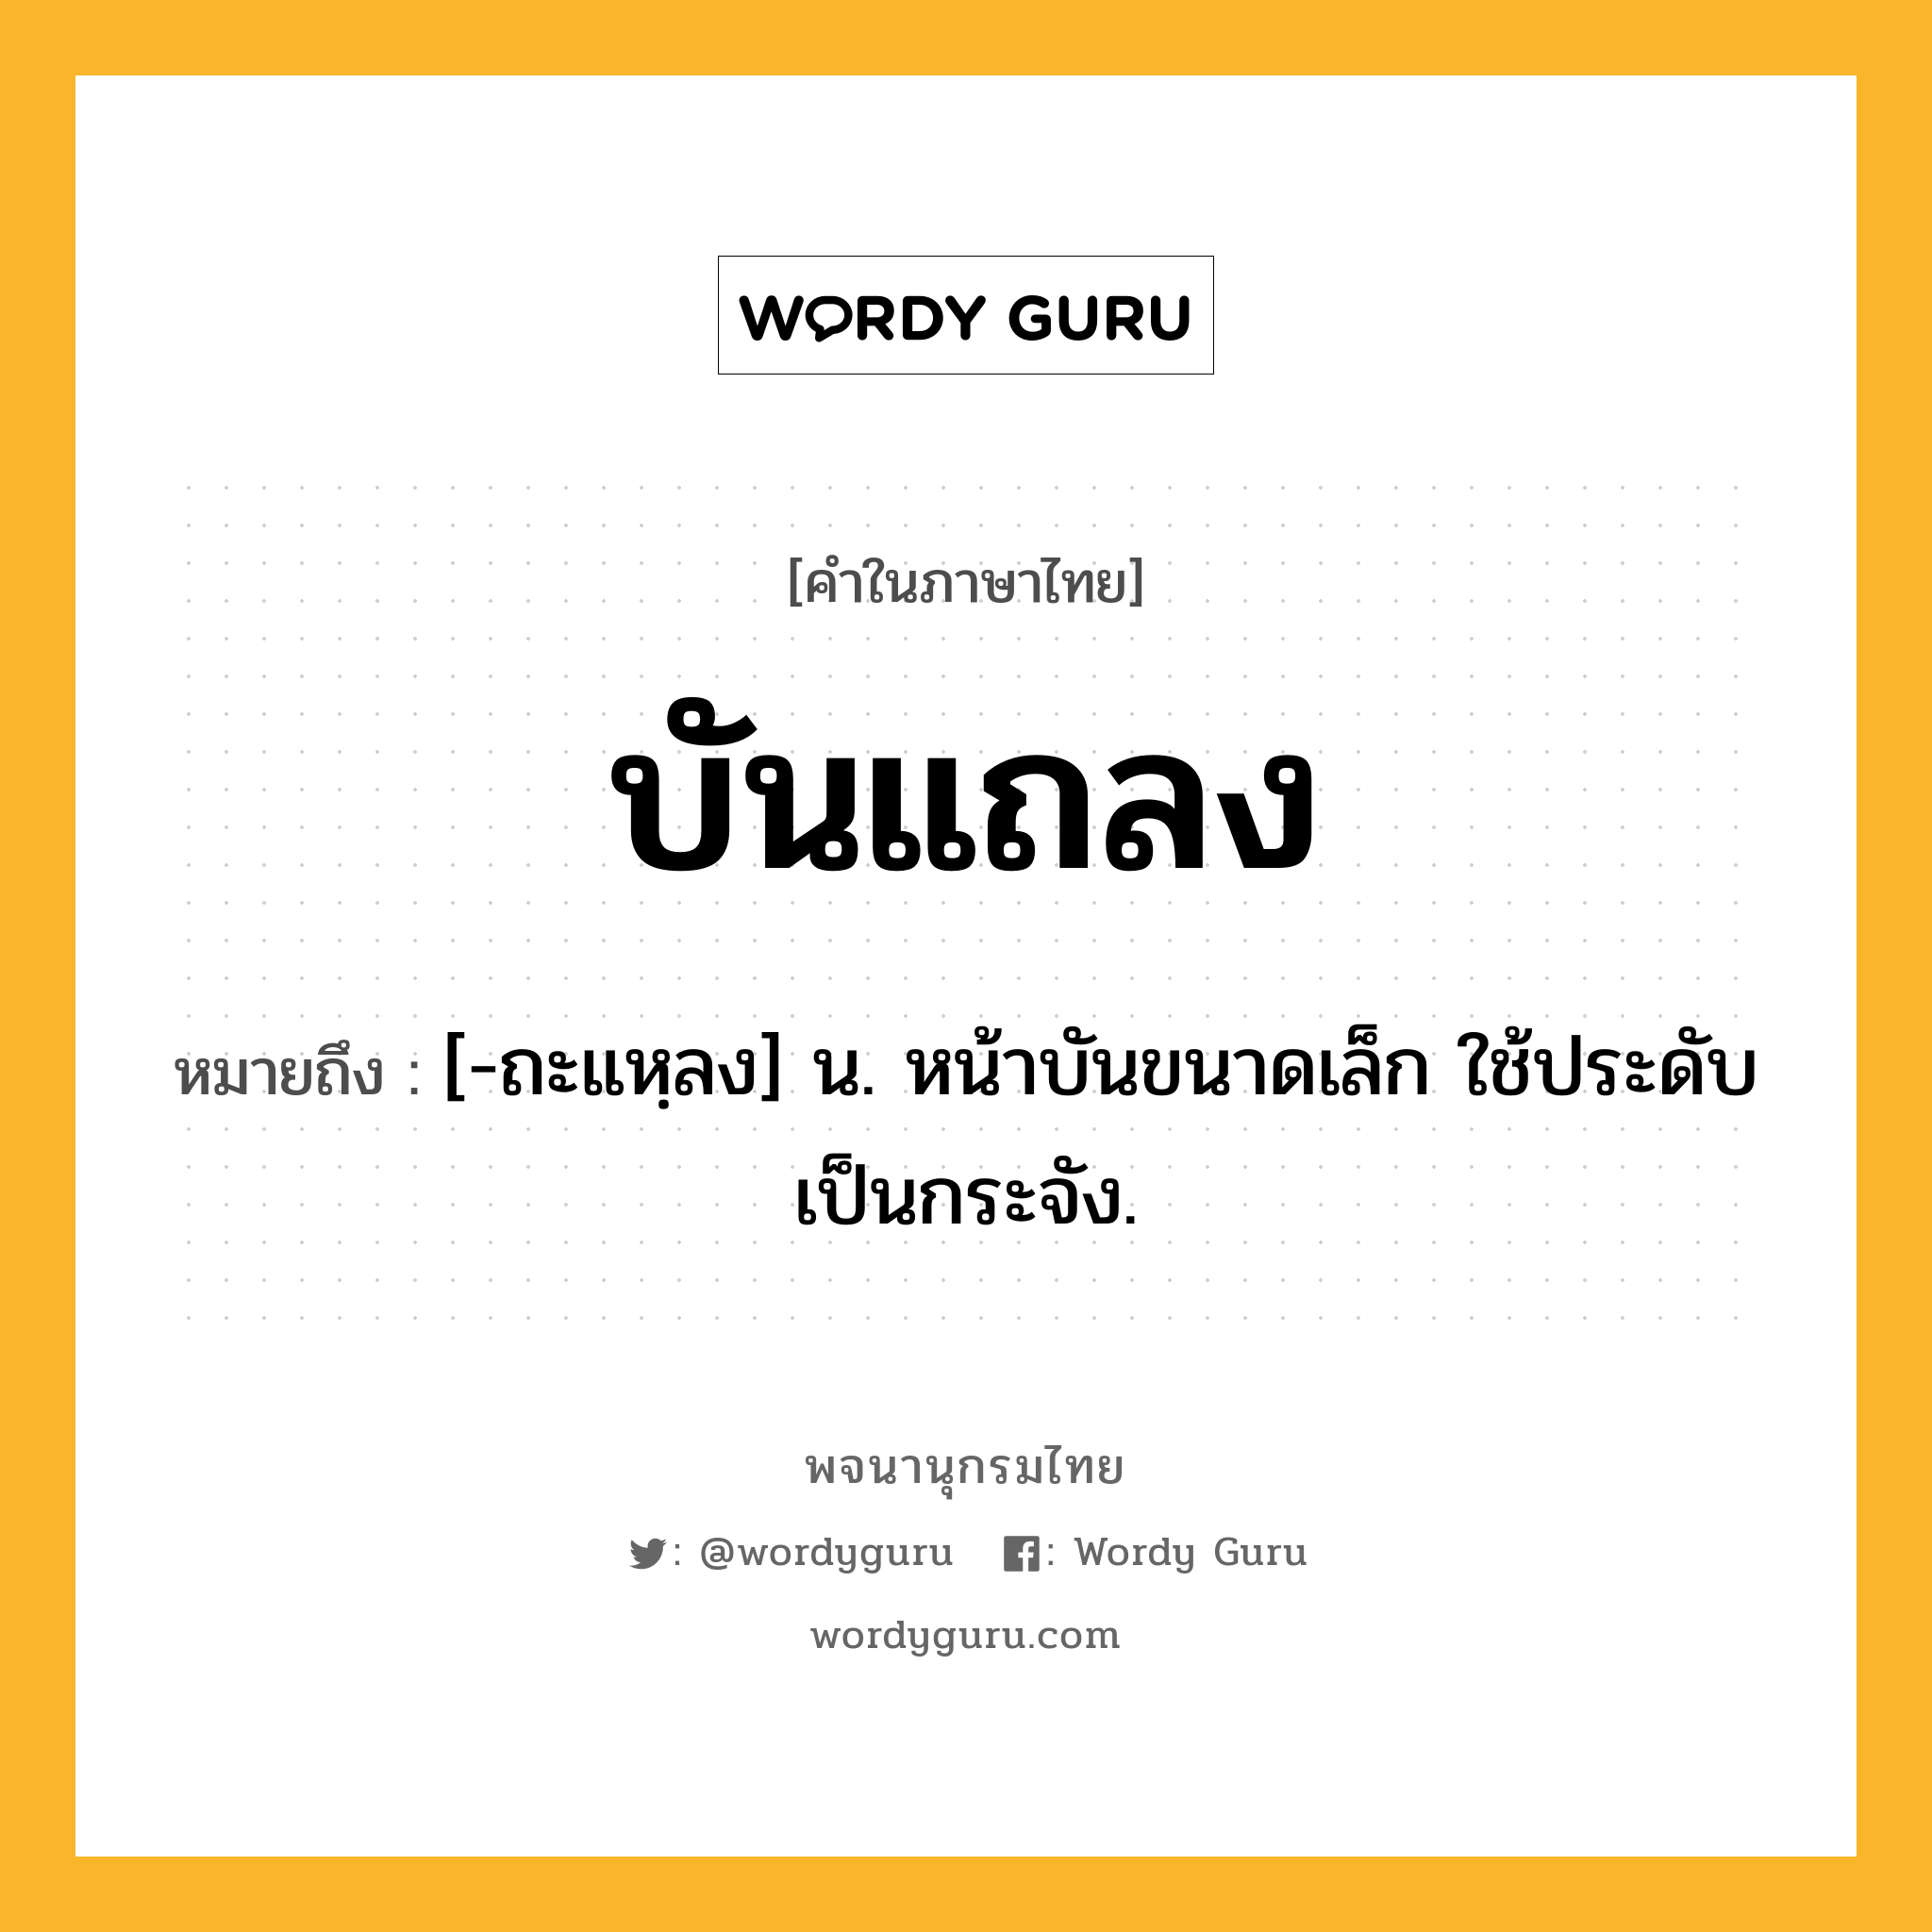 บันแถลง หมายถึงอะไร?, คำในภาษาไทย บันแถลง หมายถึง [-ถะแหฺลง] น. หน้าบันขนาดเล็ก ใช้ประดับเป็นกระจัง.